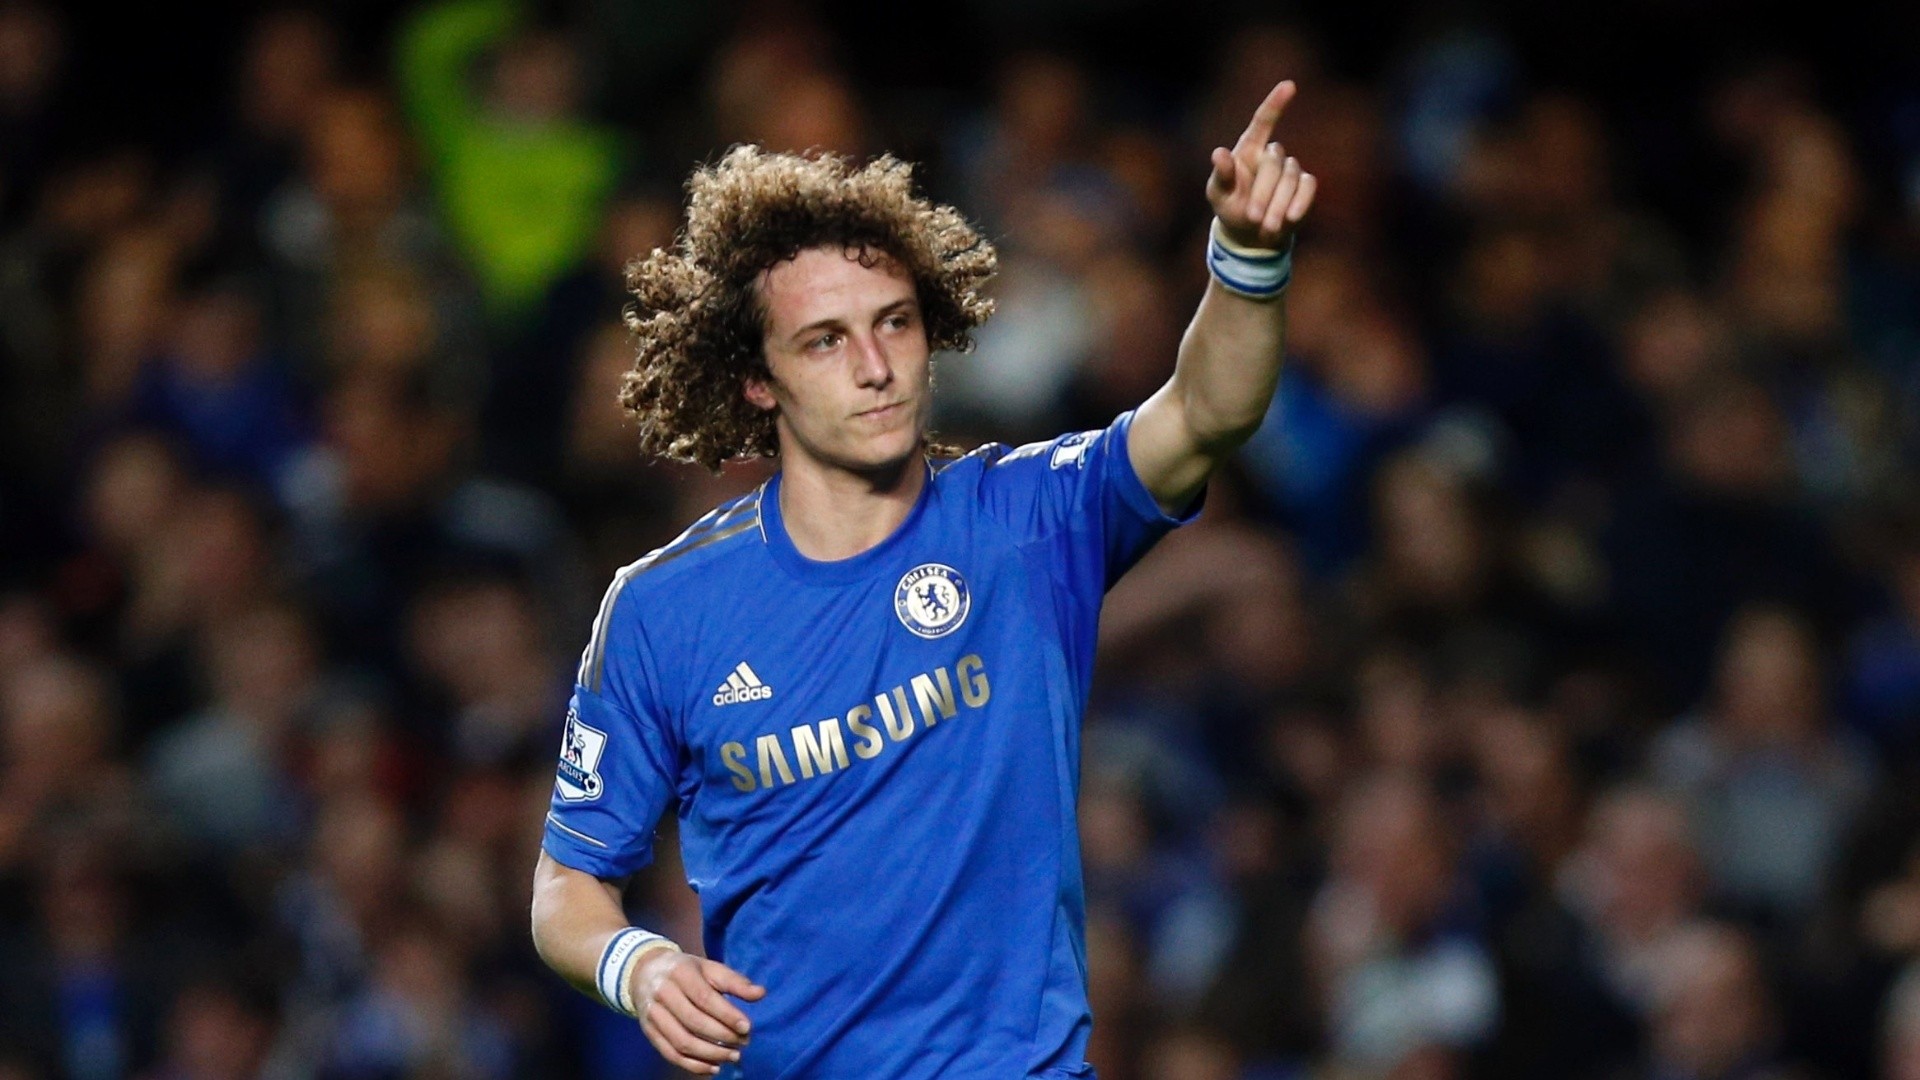 Trực tiếp tin tức ngày cuối TTCN 2016: David Luiz trên đường về Chelsea